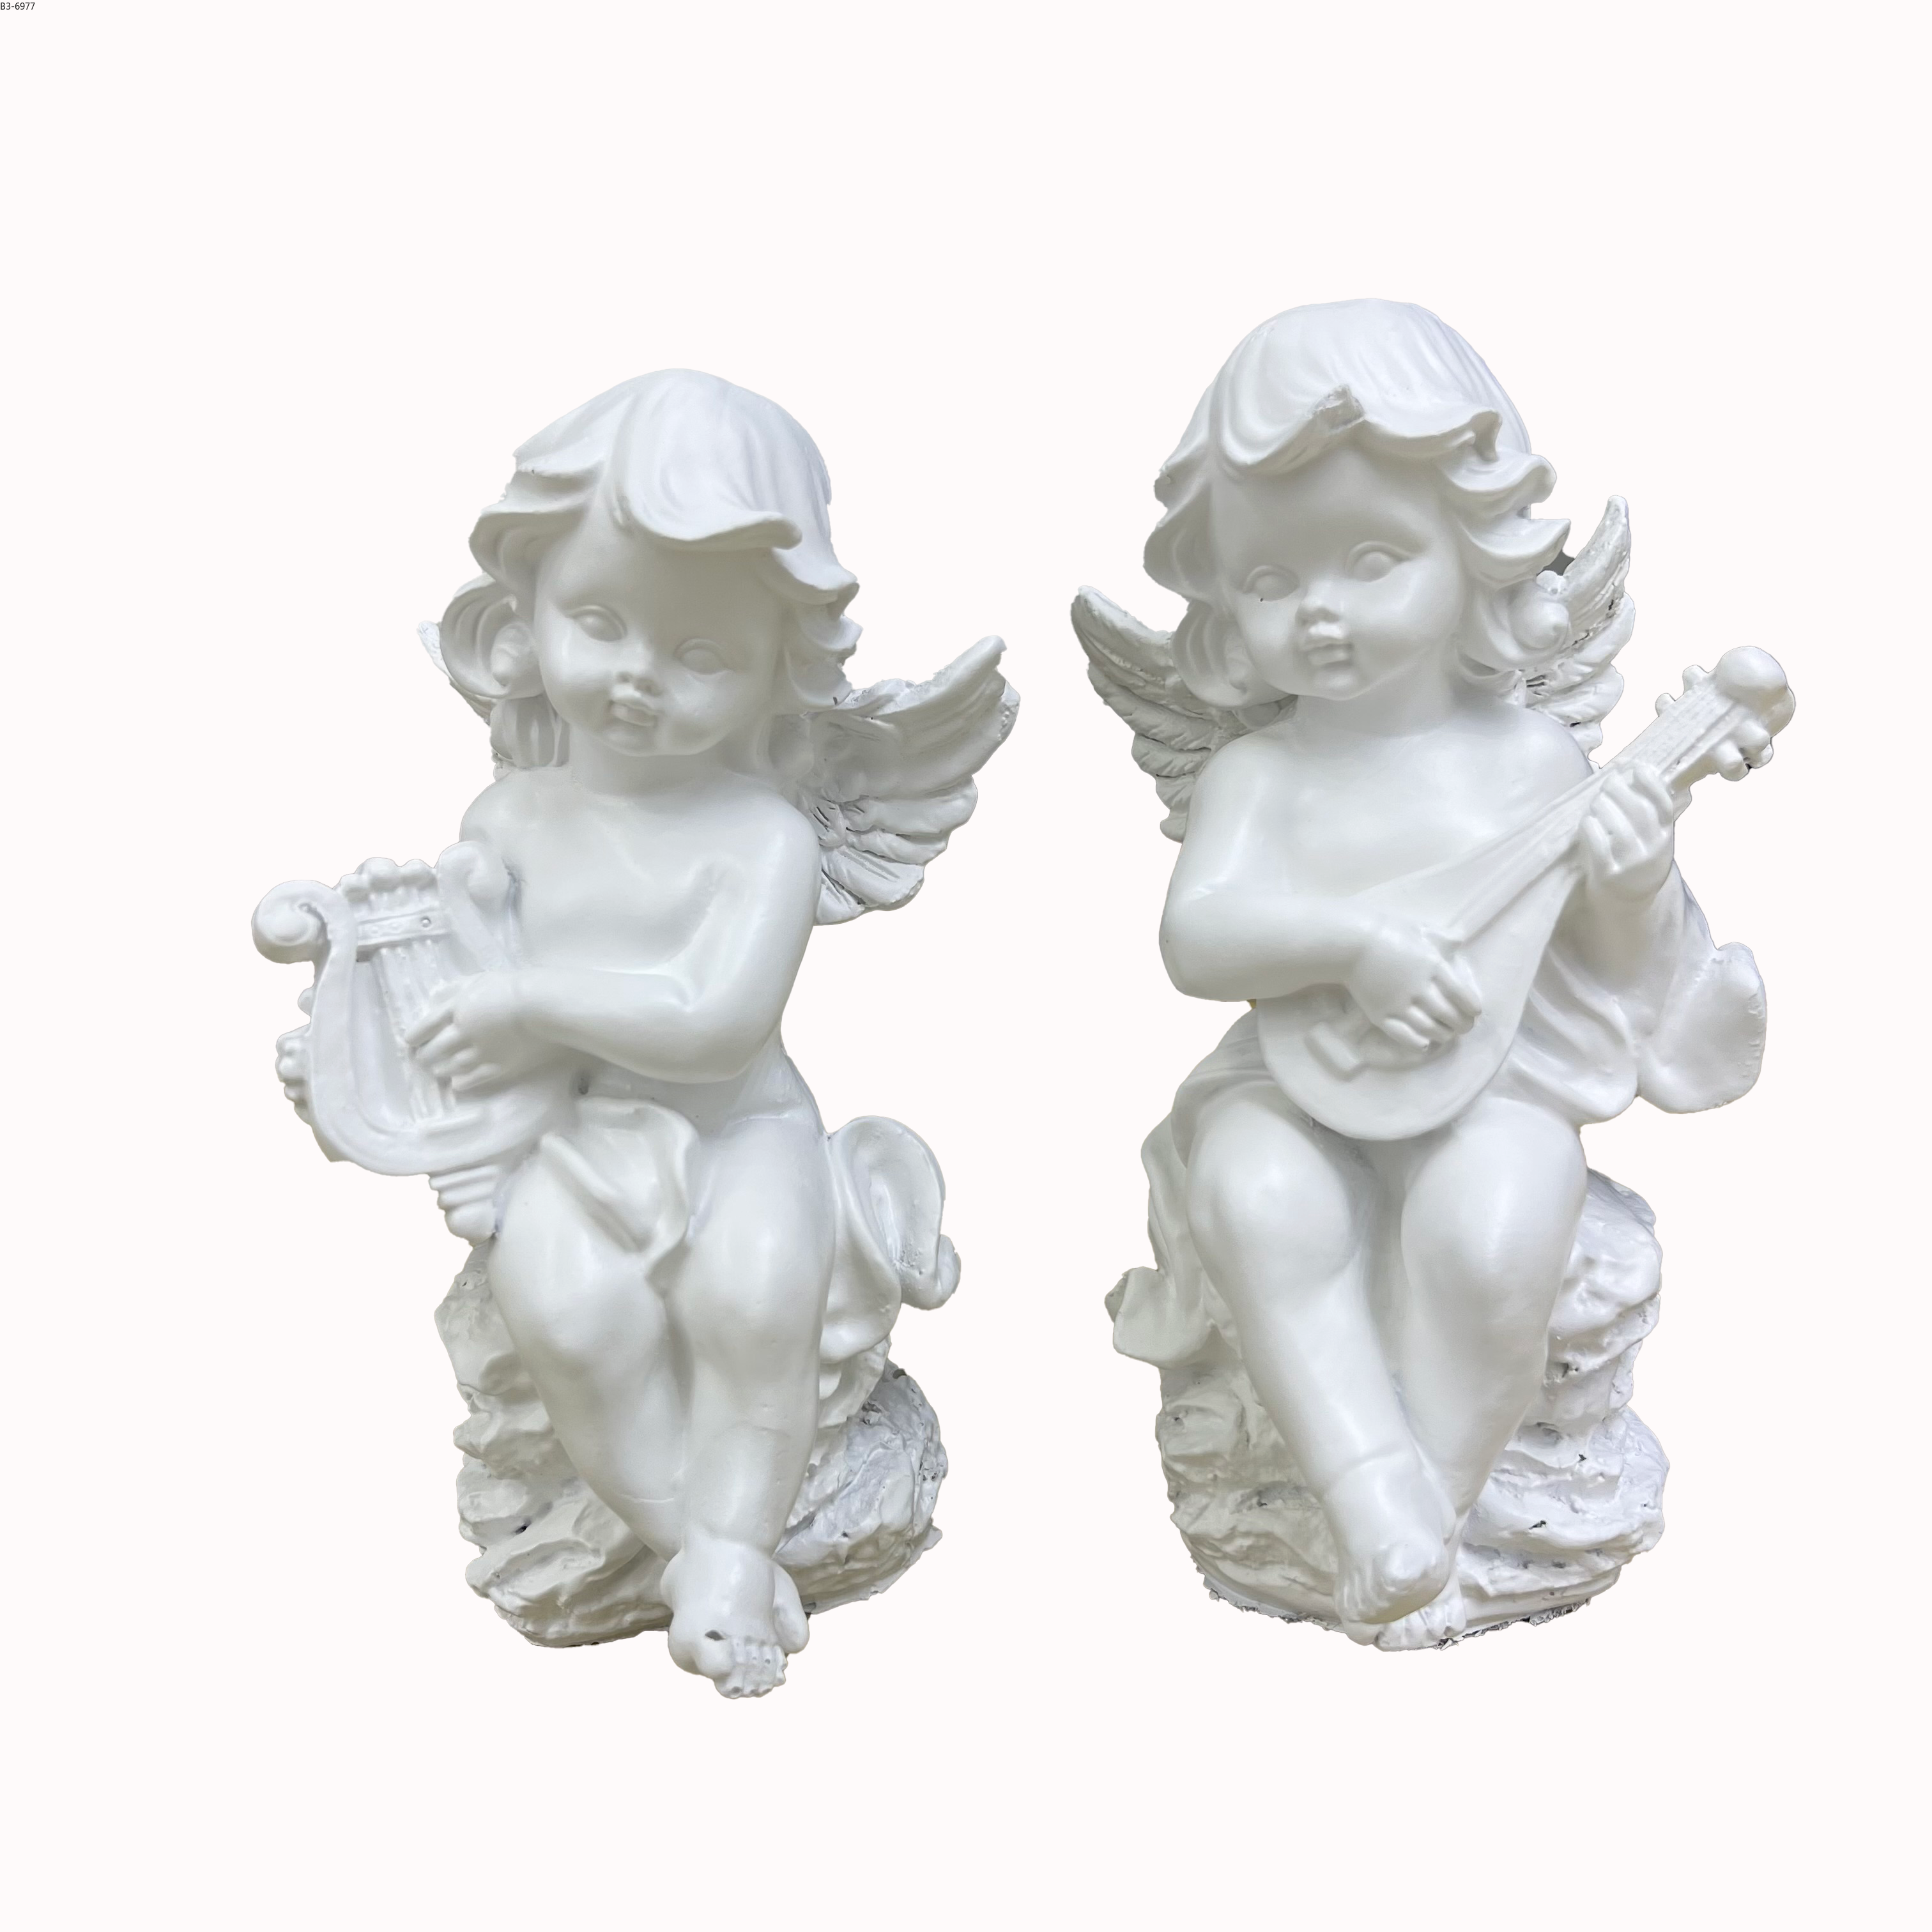 白色天使雕像带翅膀天使摆件花园装饰品树脂工艺品婴儿房家居摆件圣诞节礼品